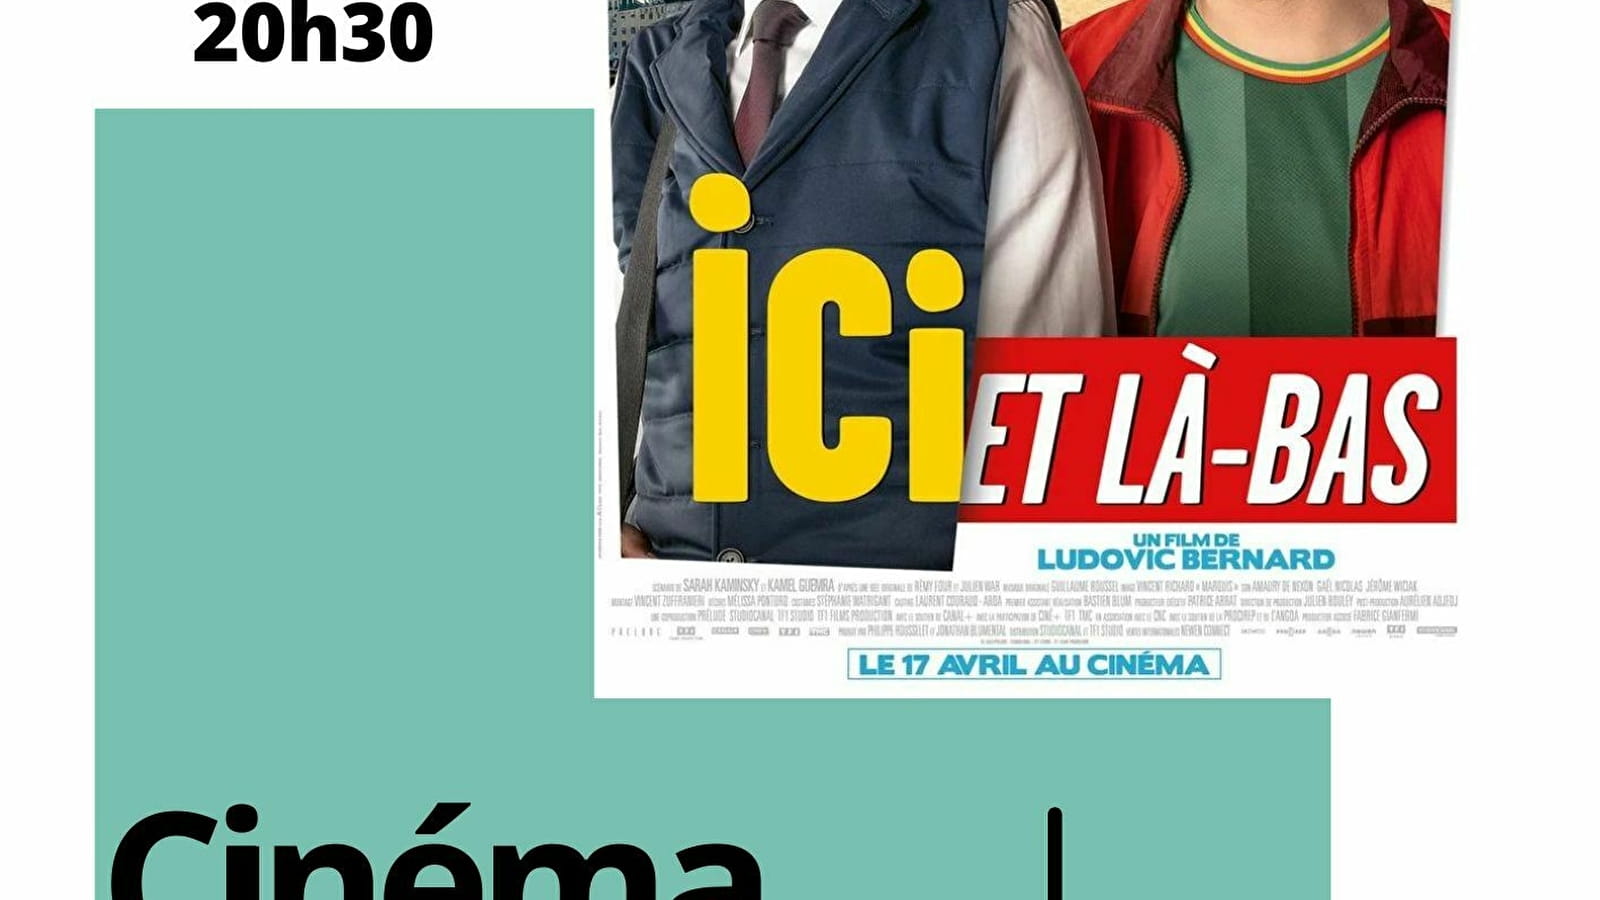 Séance Cinéma ' Ici et là-bas'